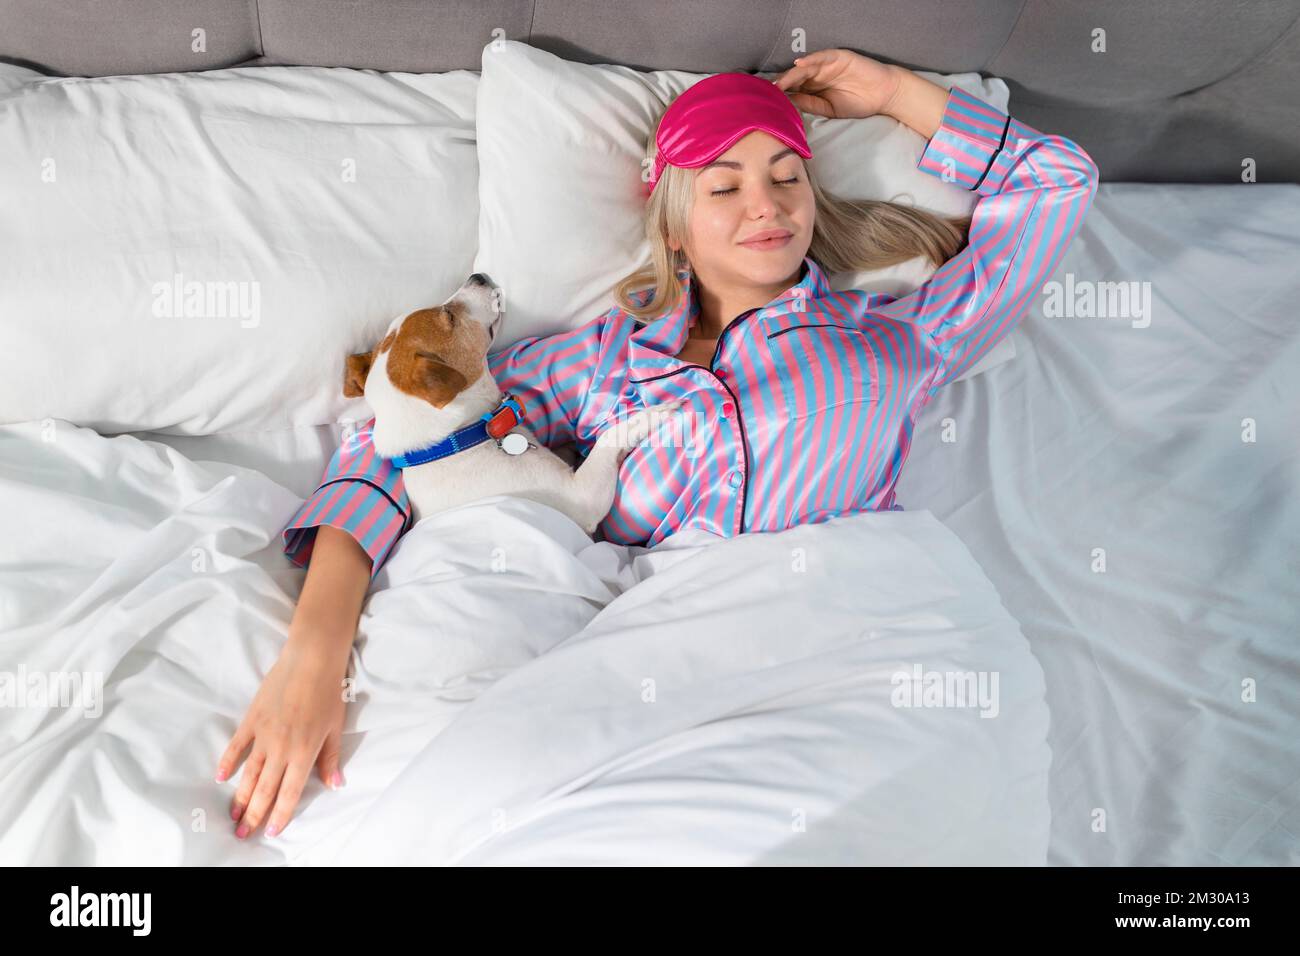 Eine attraktive junge Frau im Pyjama hält einen Hund, während sie auf einem Bett liegt Stockfoto